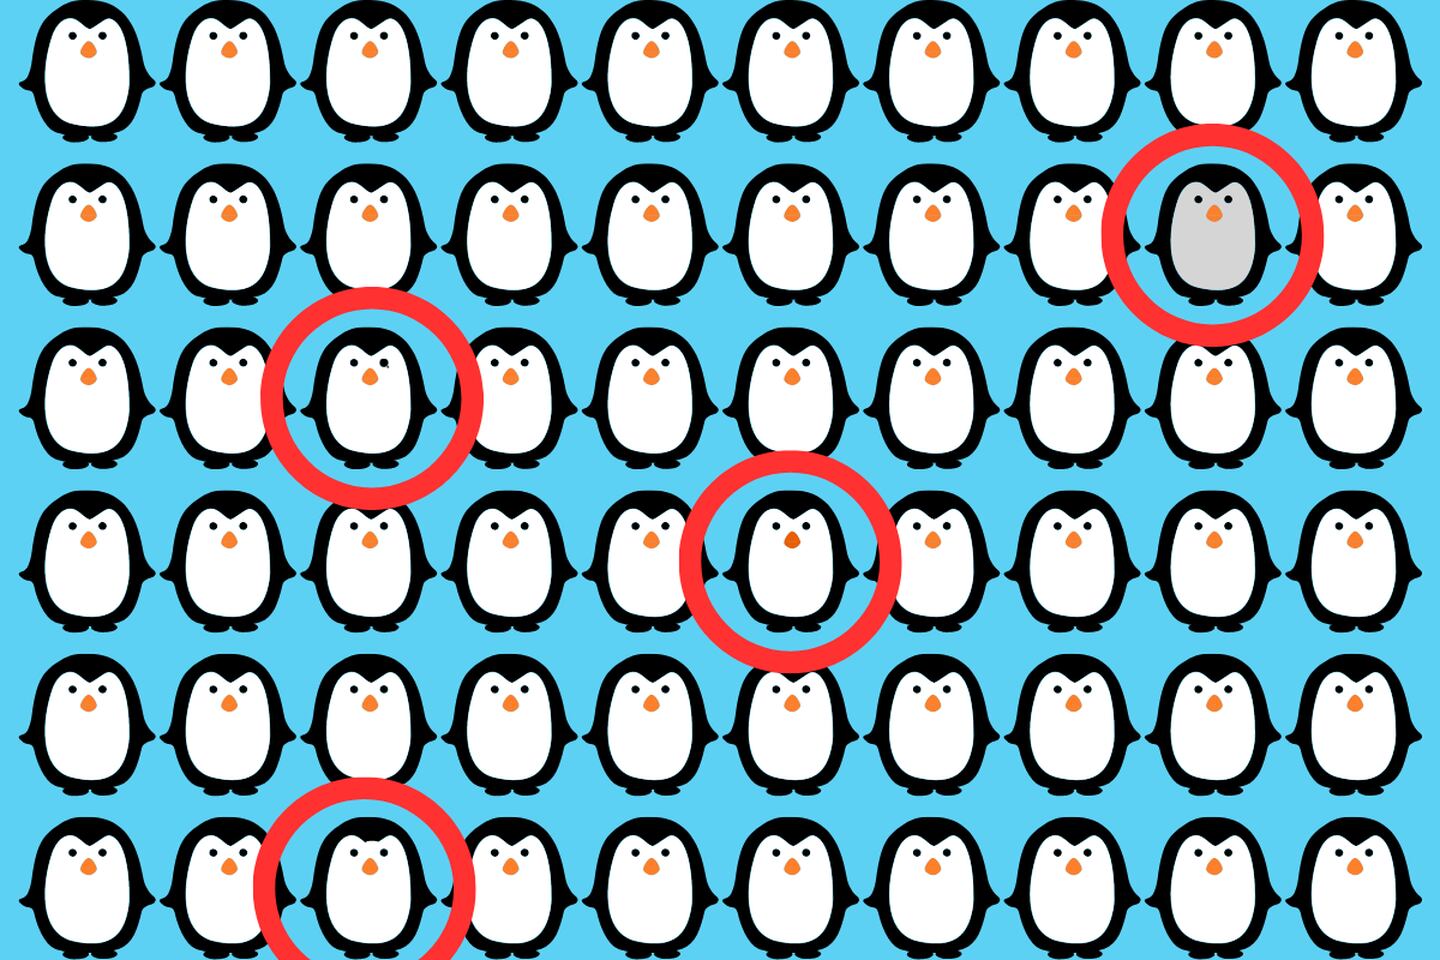 En este test visual hay muchos pingüinos iguales pero cuatro que son diferentes.